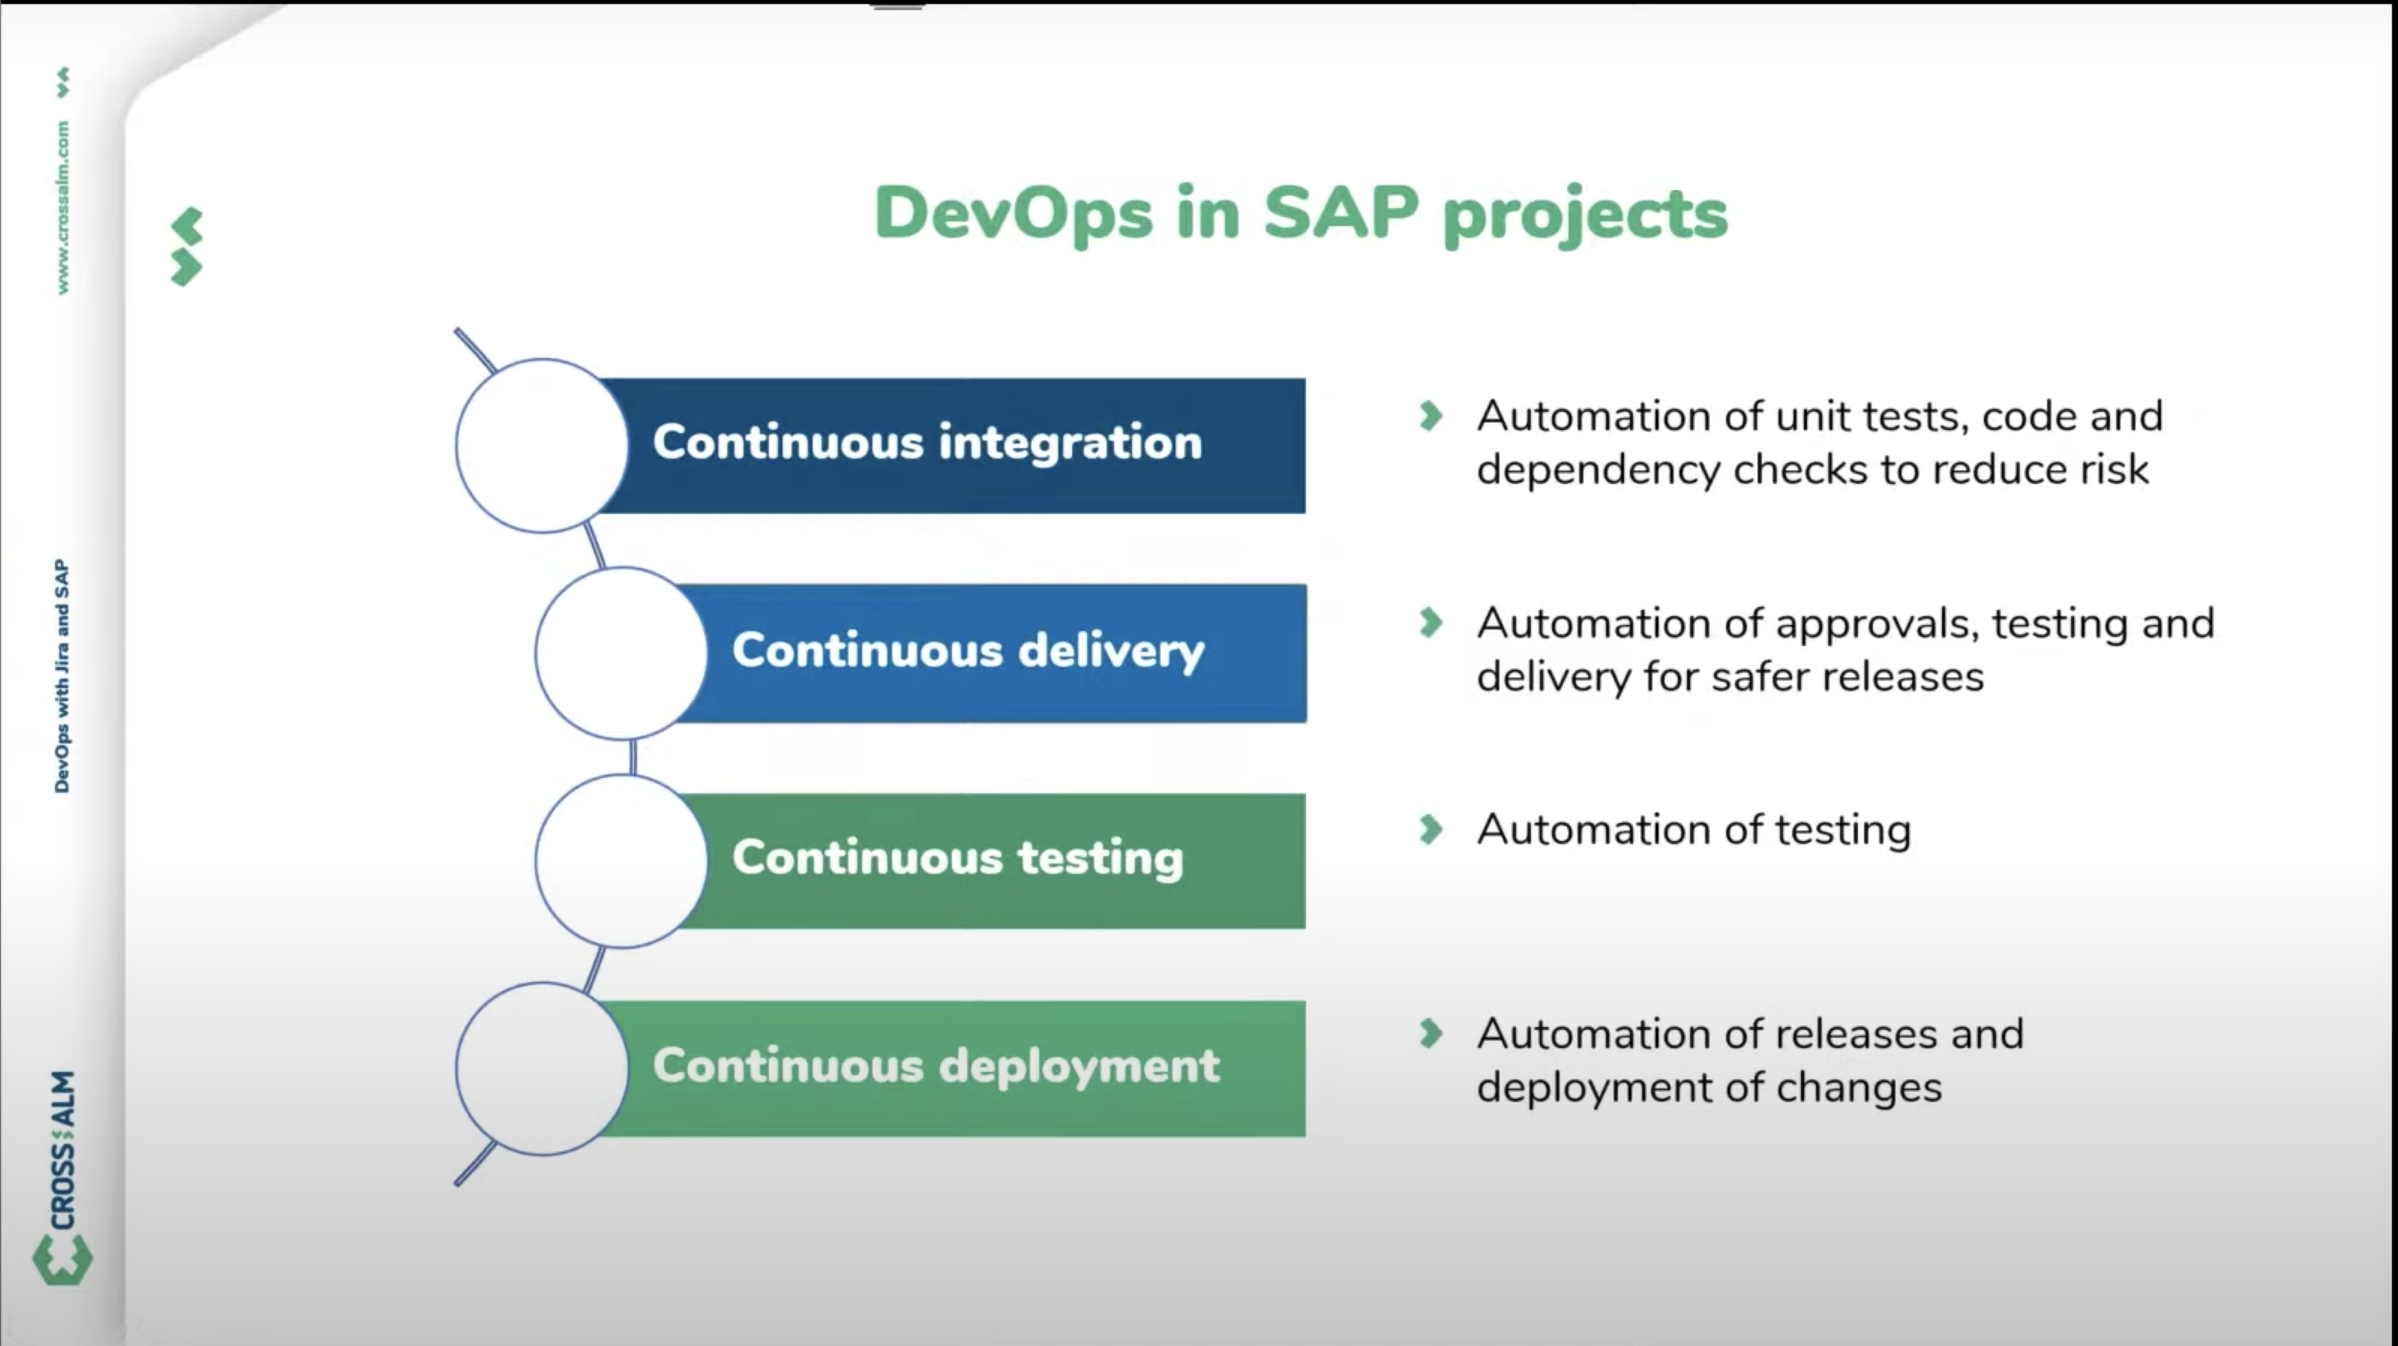 DevOps in SAP